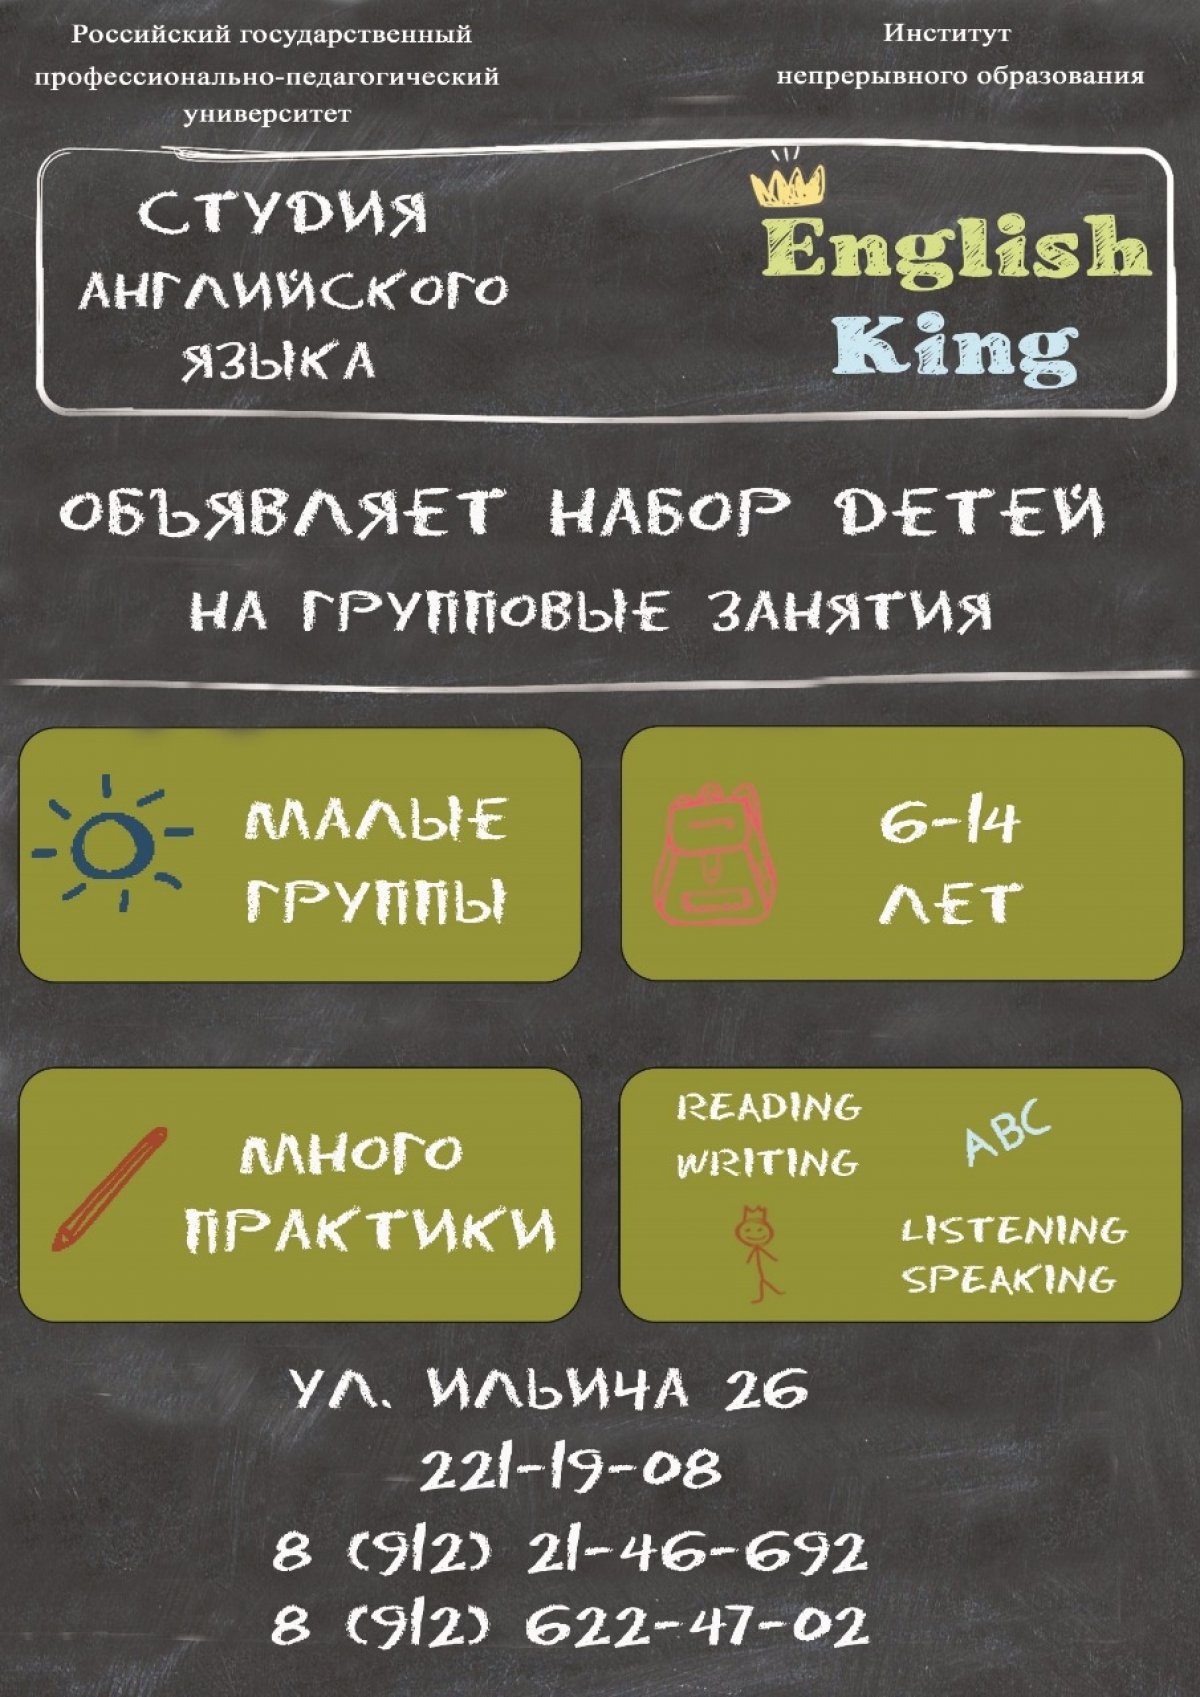 ❗ Студия английского языка «English King» объявляют набор до 1 октября на дополнительную образовательную программу «Английский язык для детей»